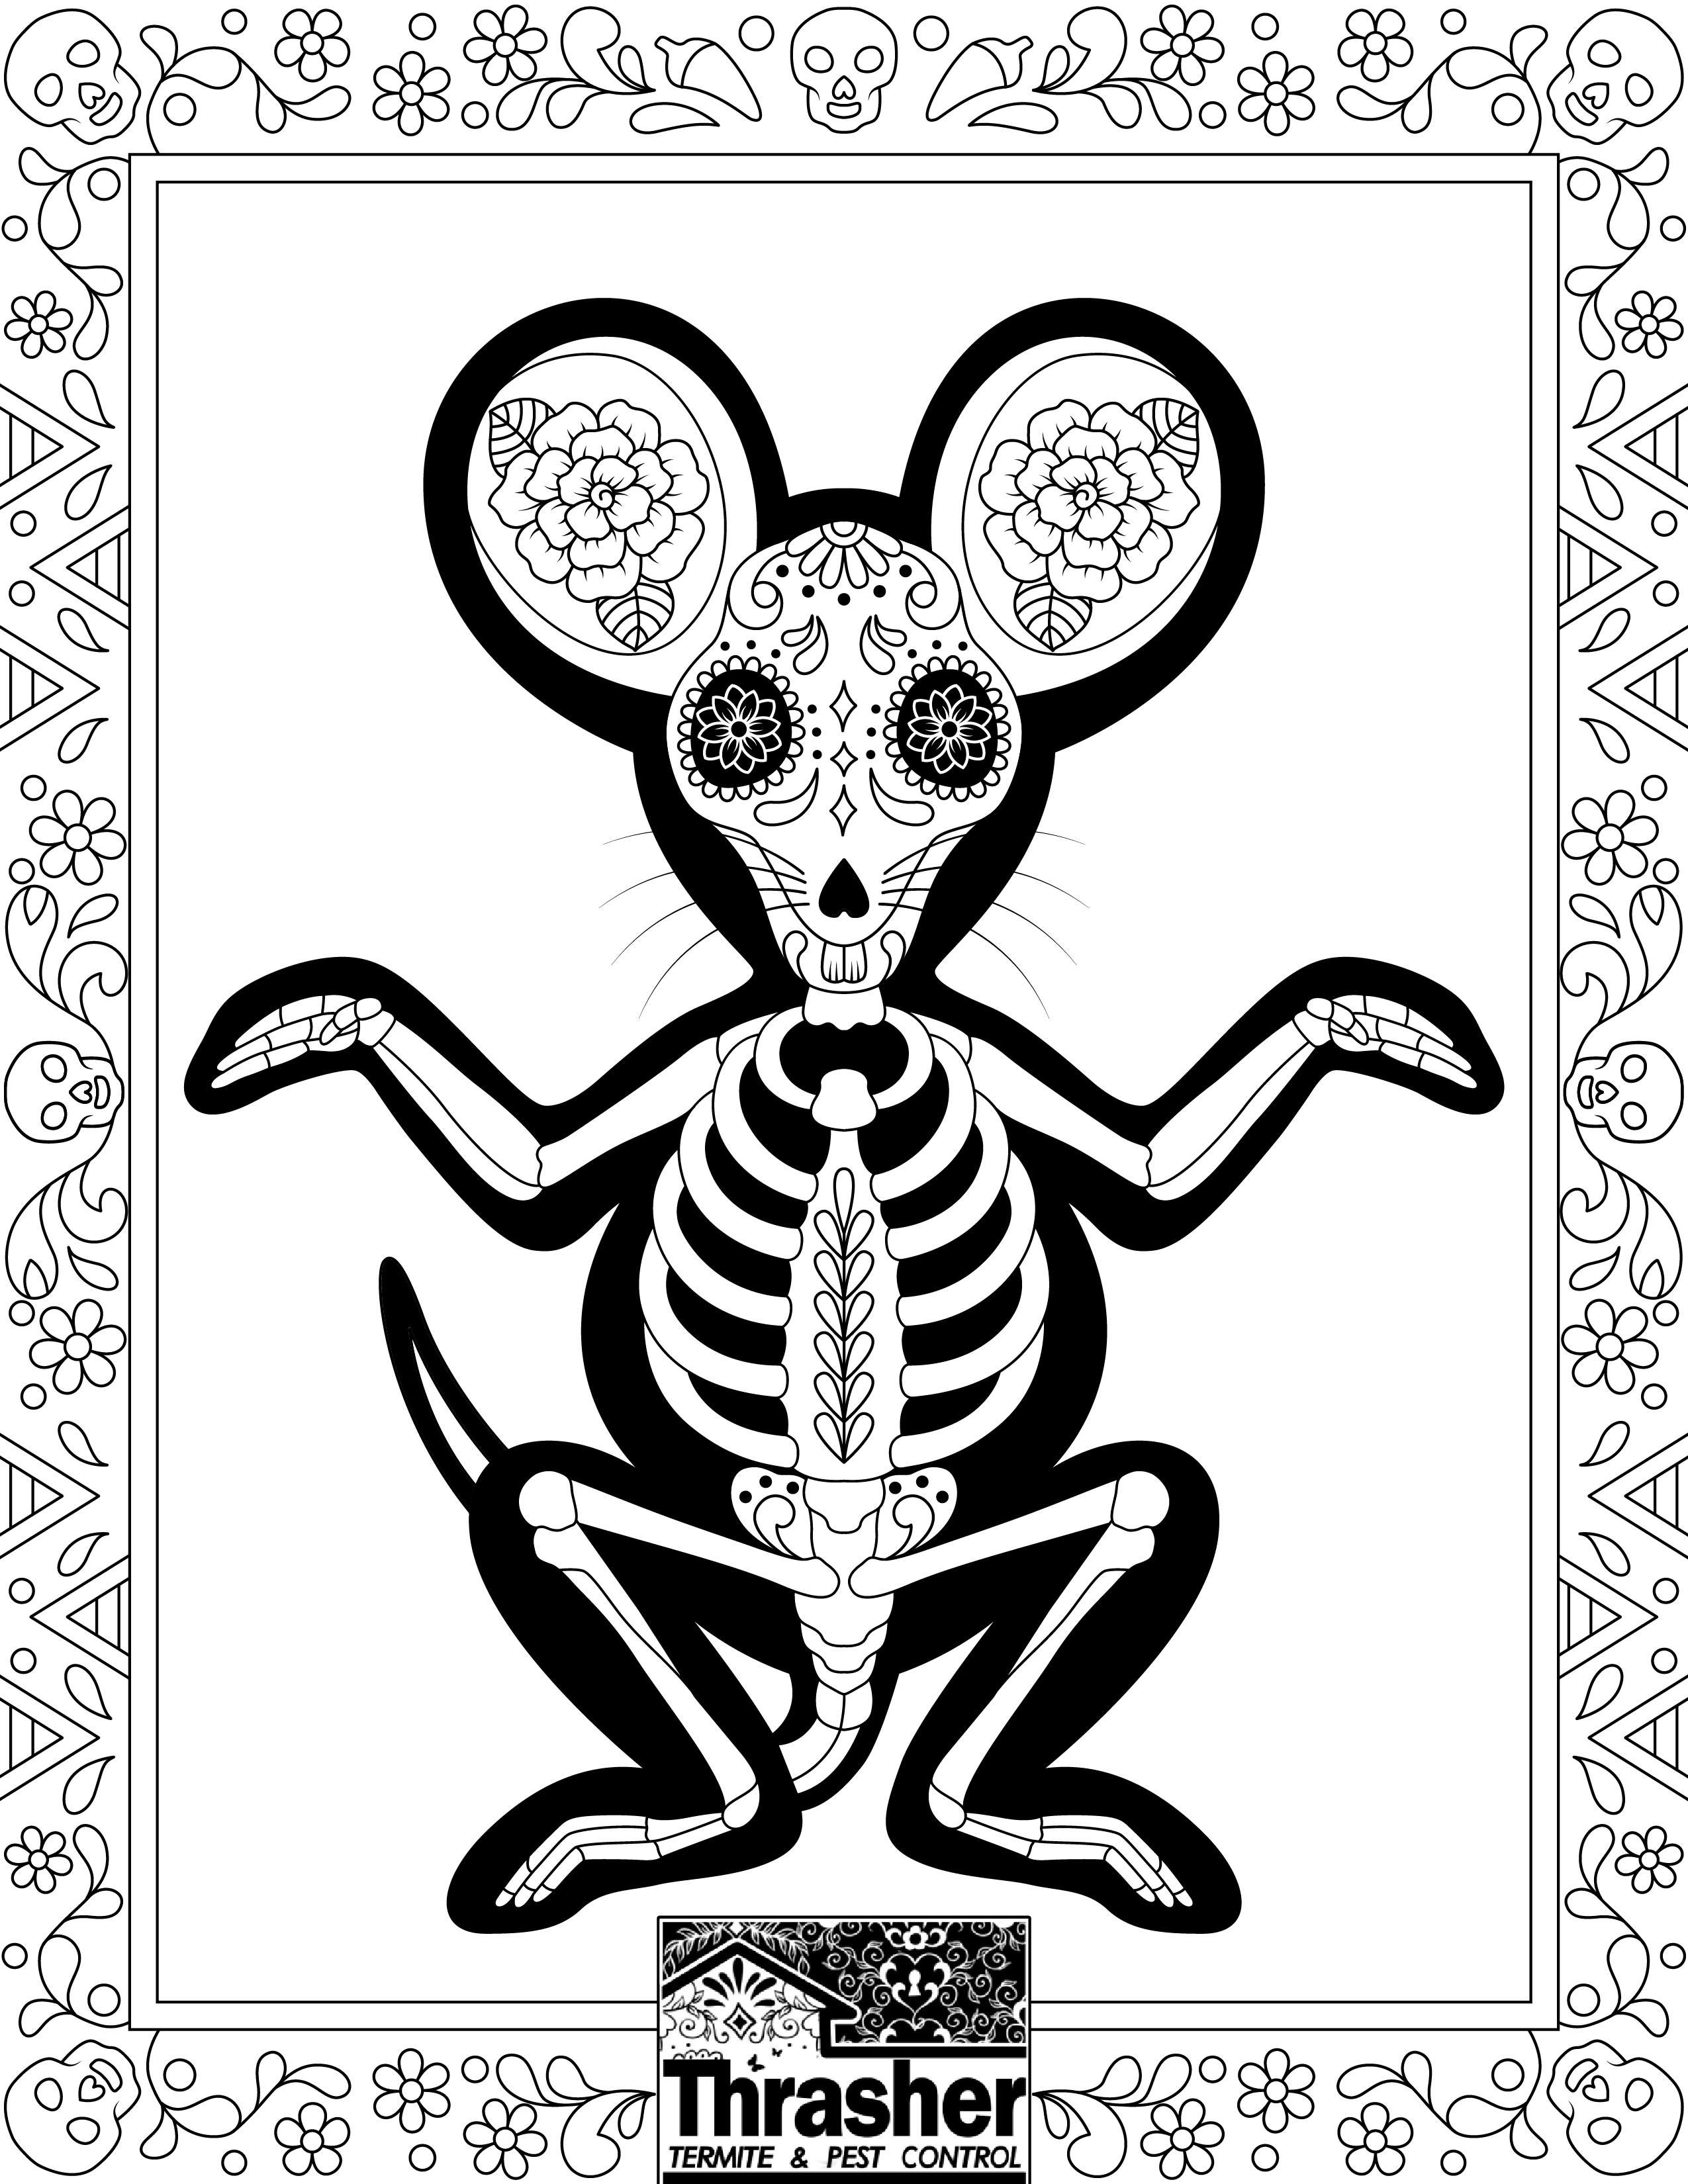 Rat Coloring Page.Thrasher, Dia de los Muertos/Mexican Folk Art style